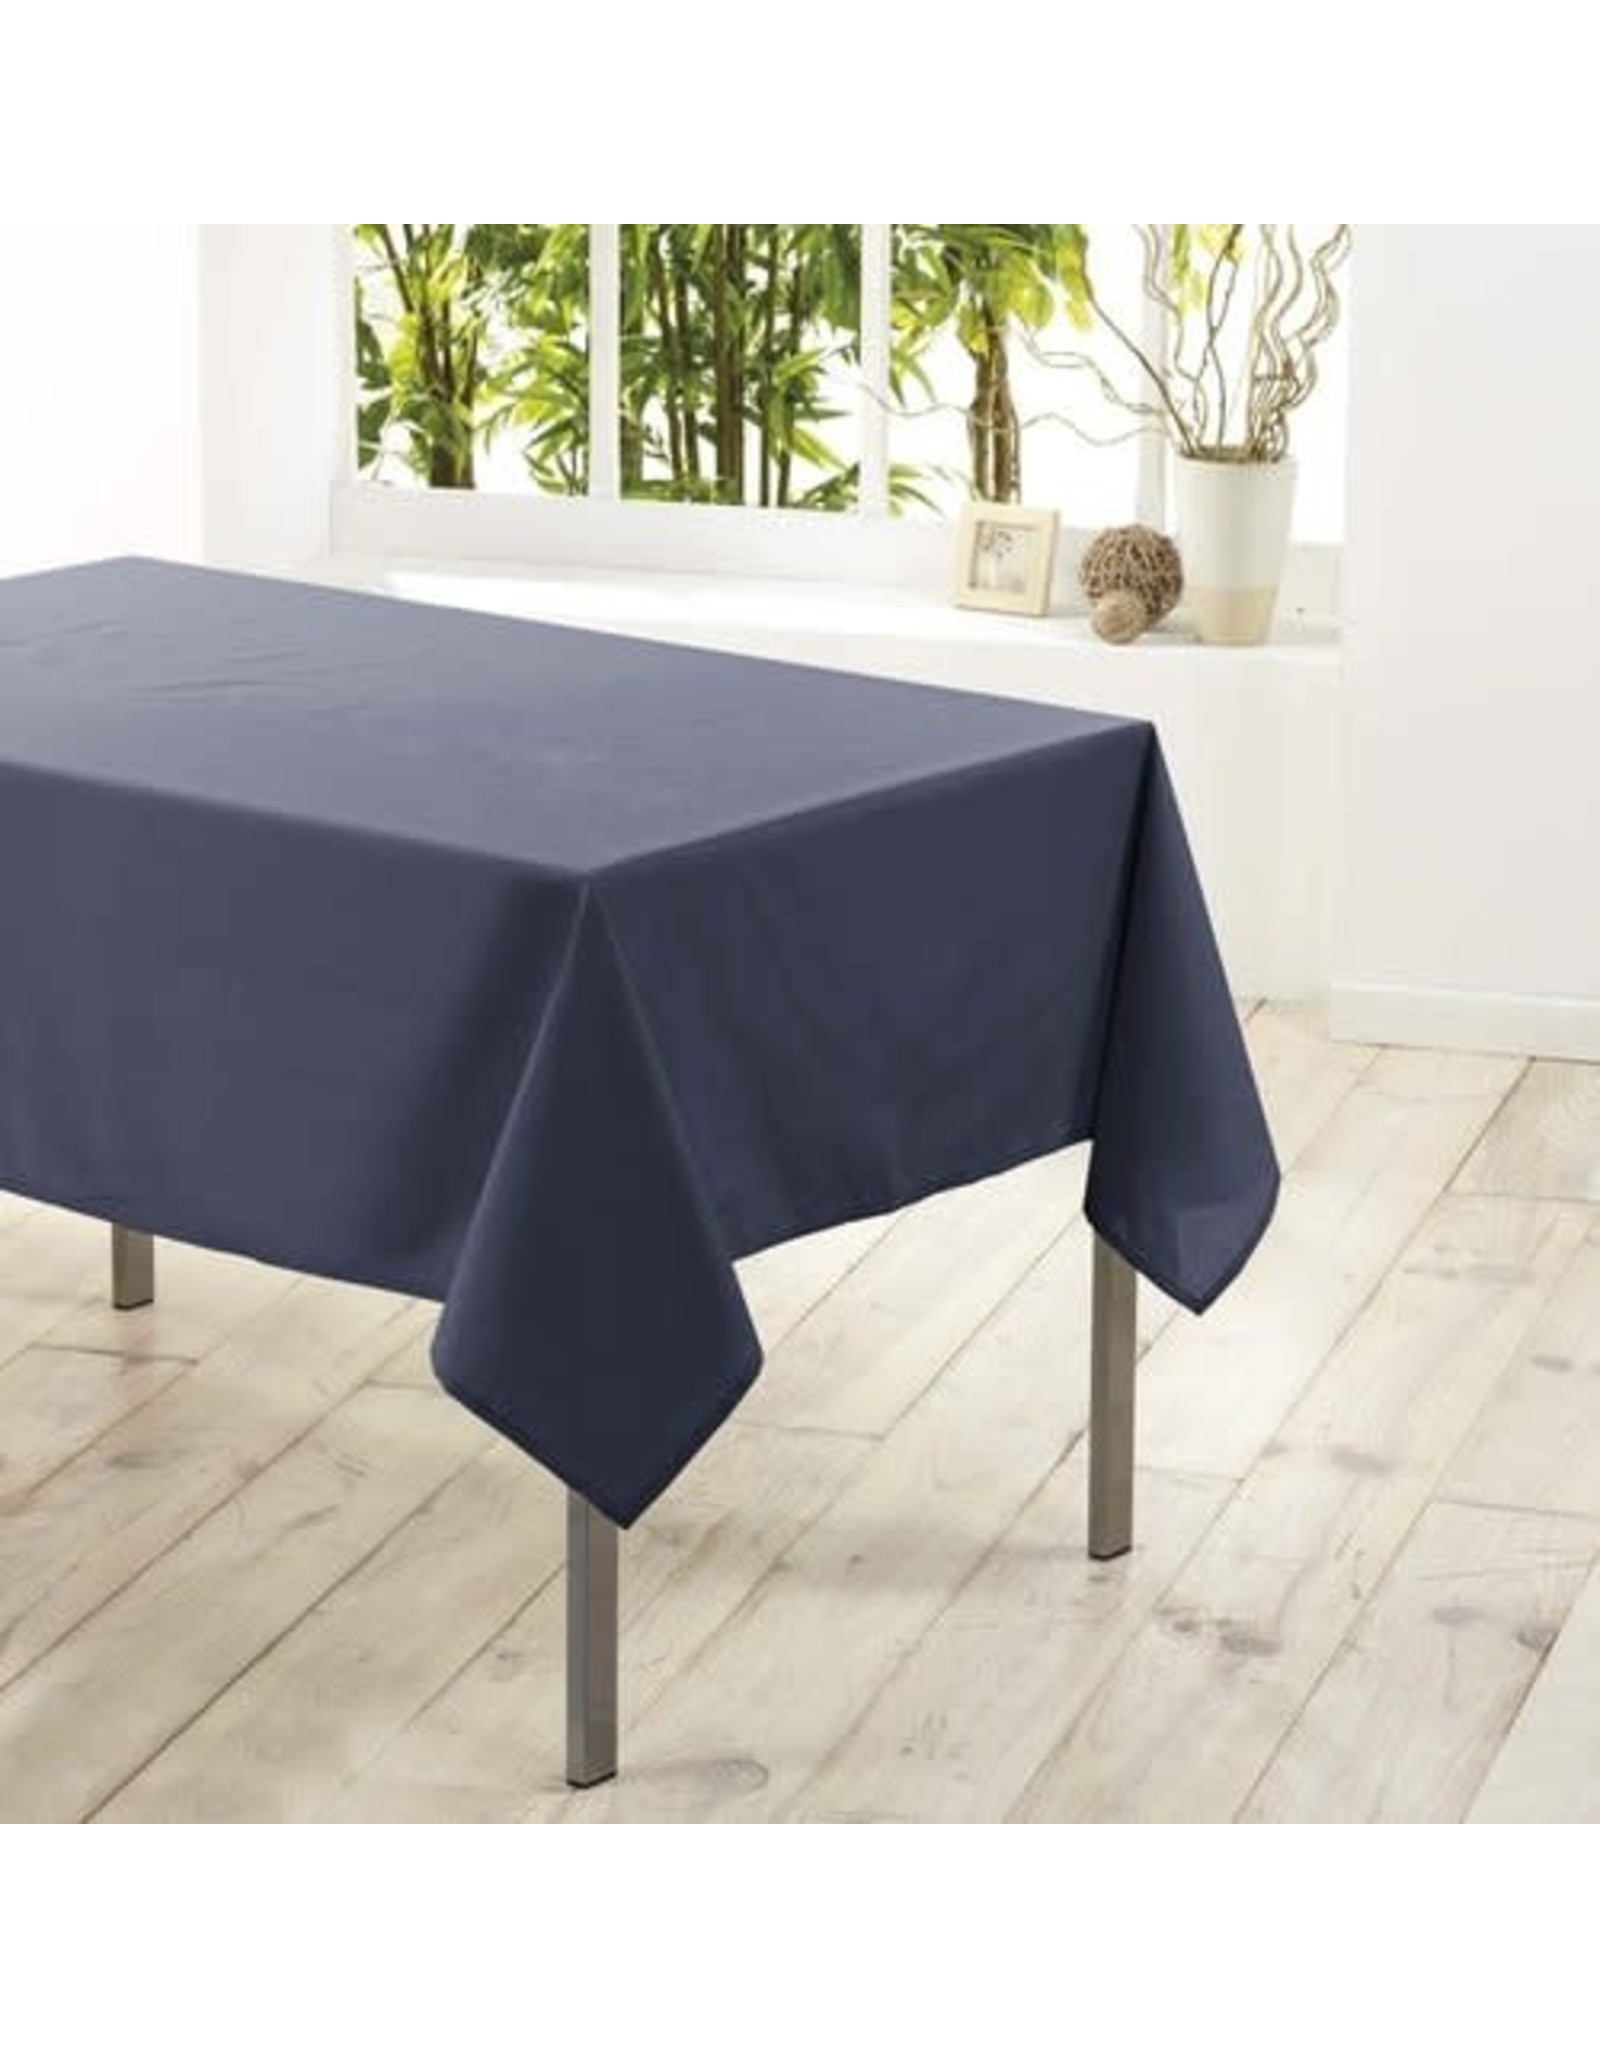 WICOTEX Donkerblauw tafelkleed van polyester met formaat 140 x 200 cm